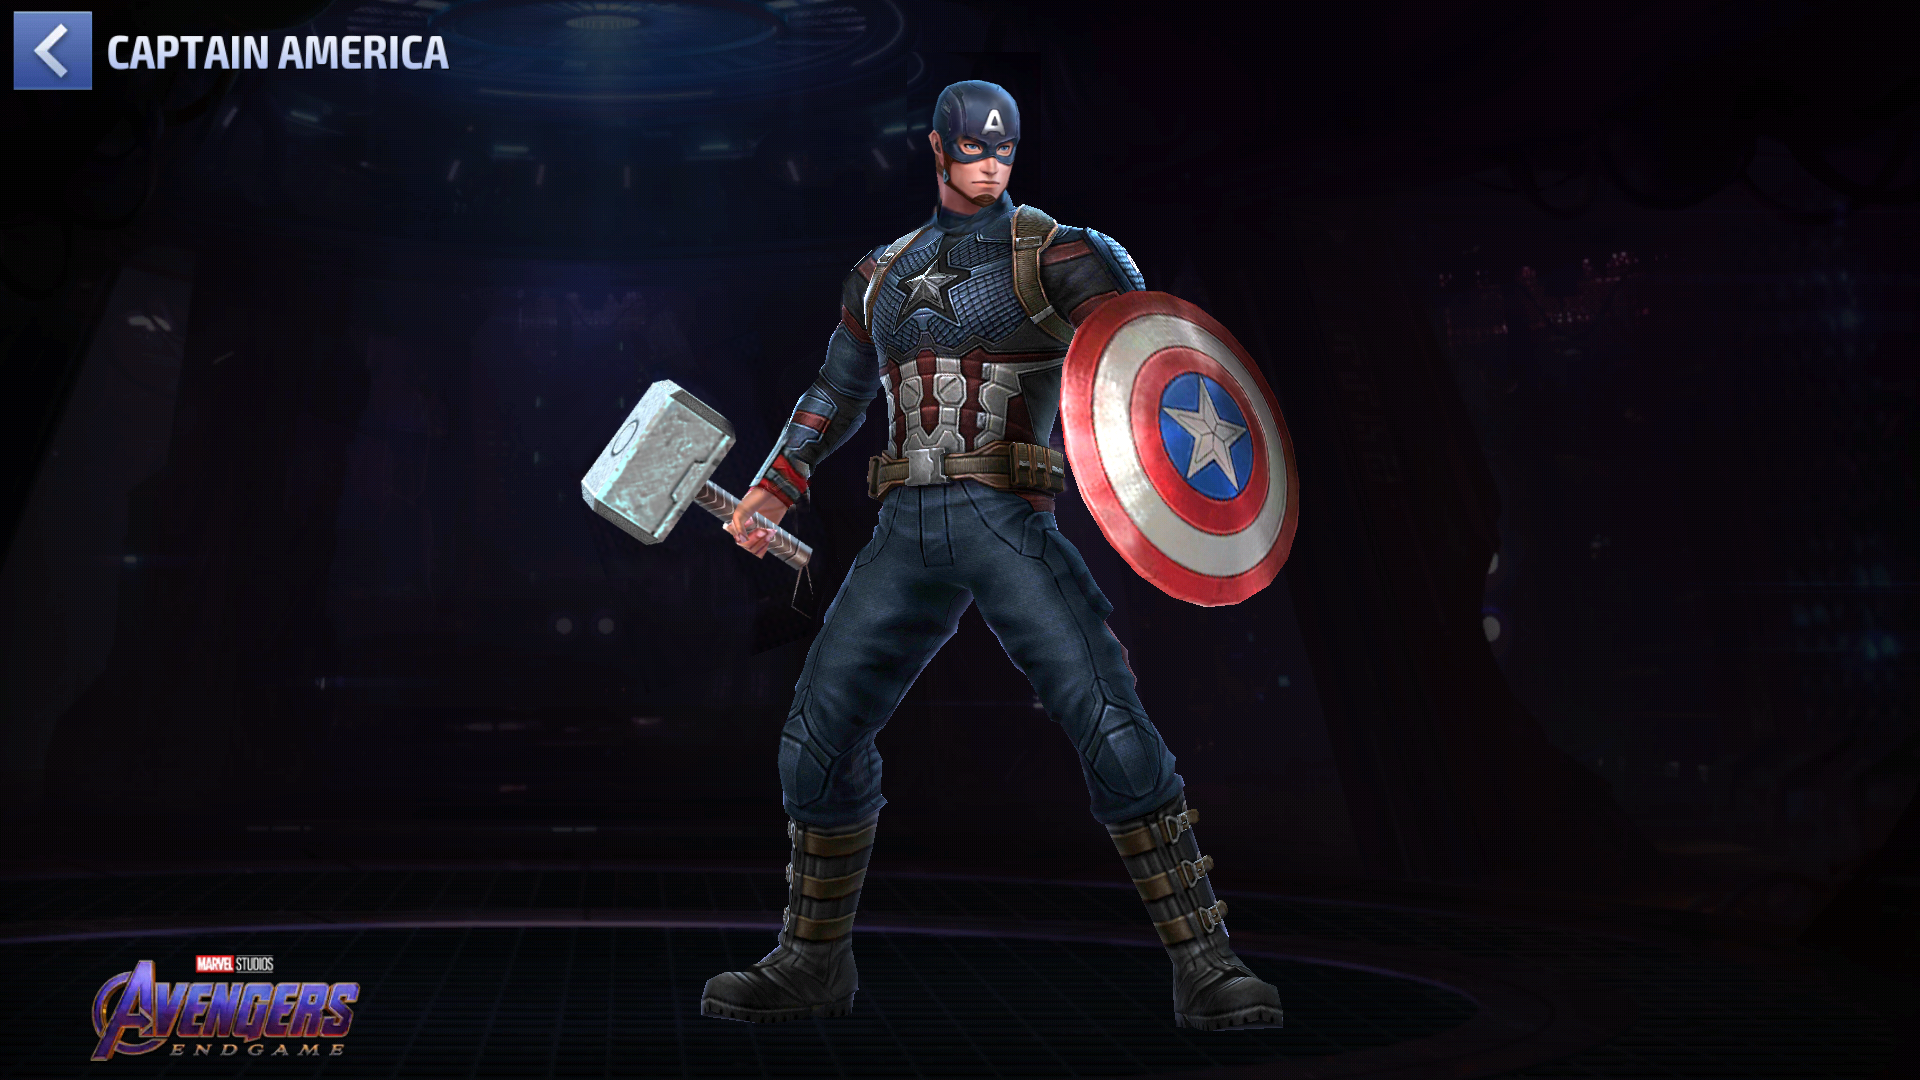 Captain America Endgame Wallpaper With Hammer